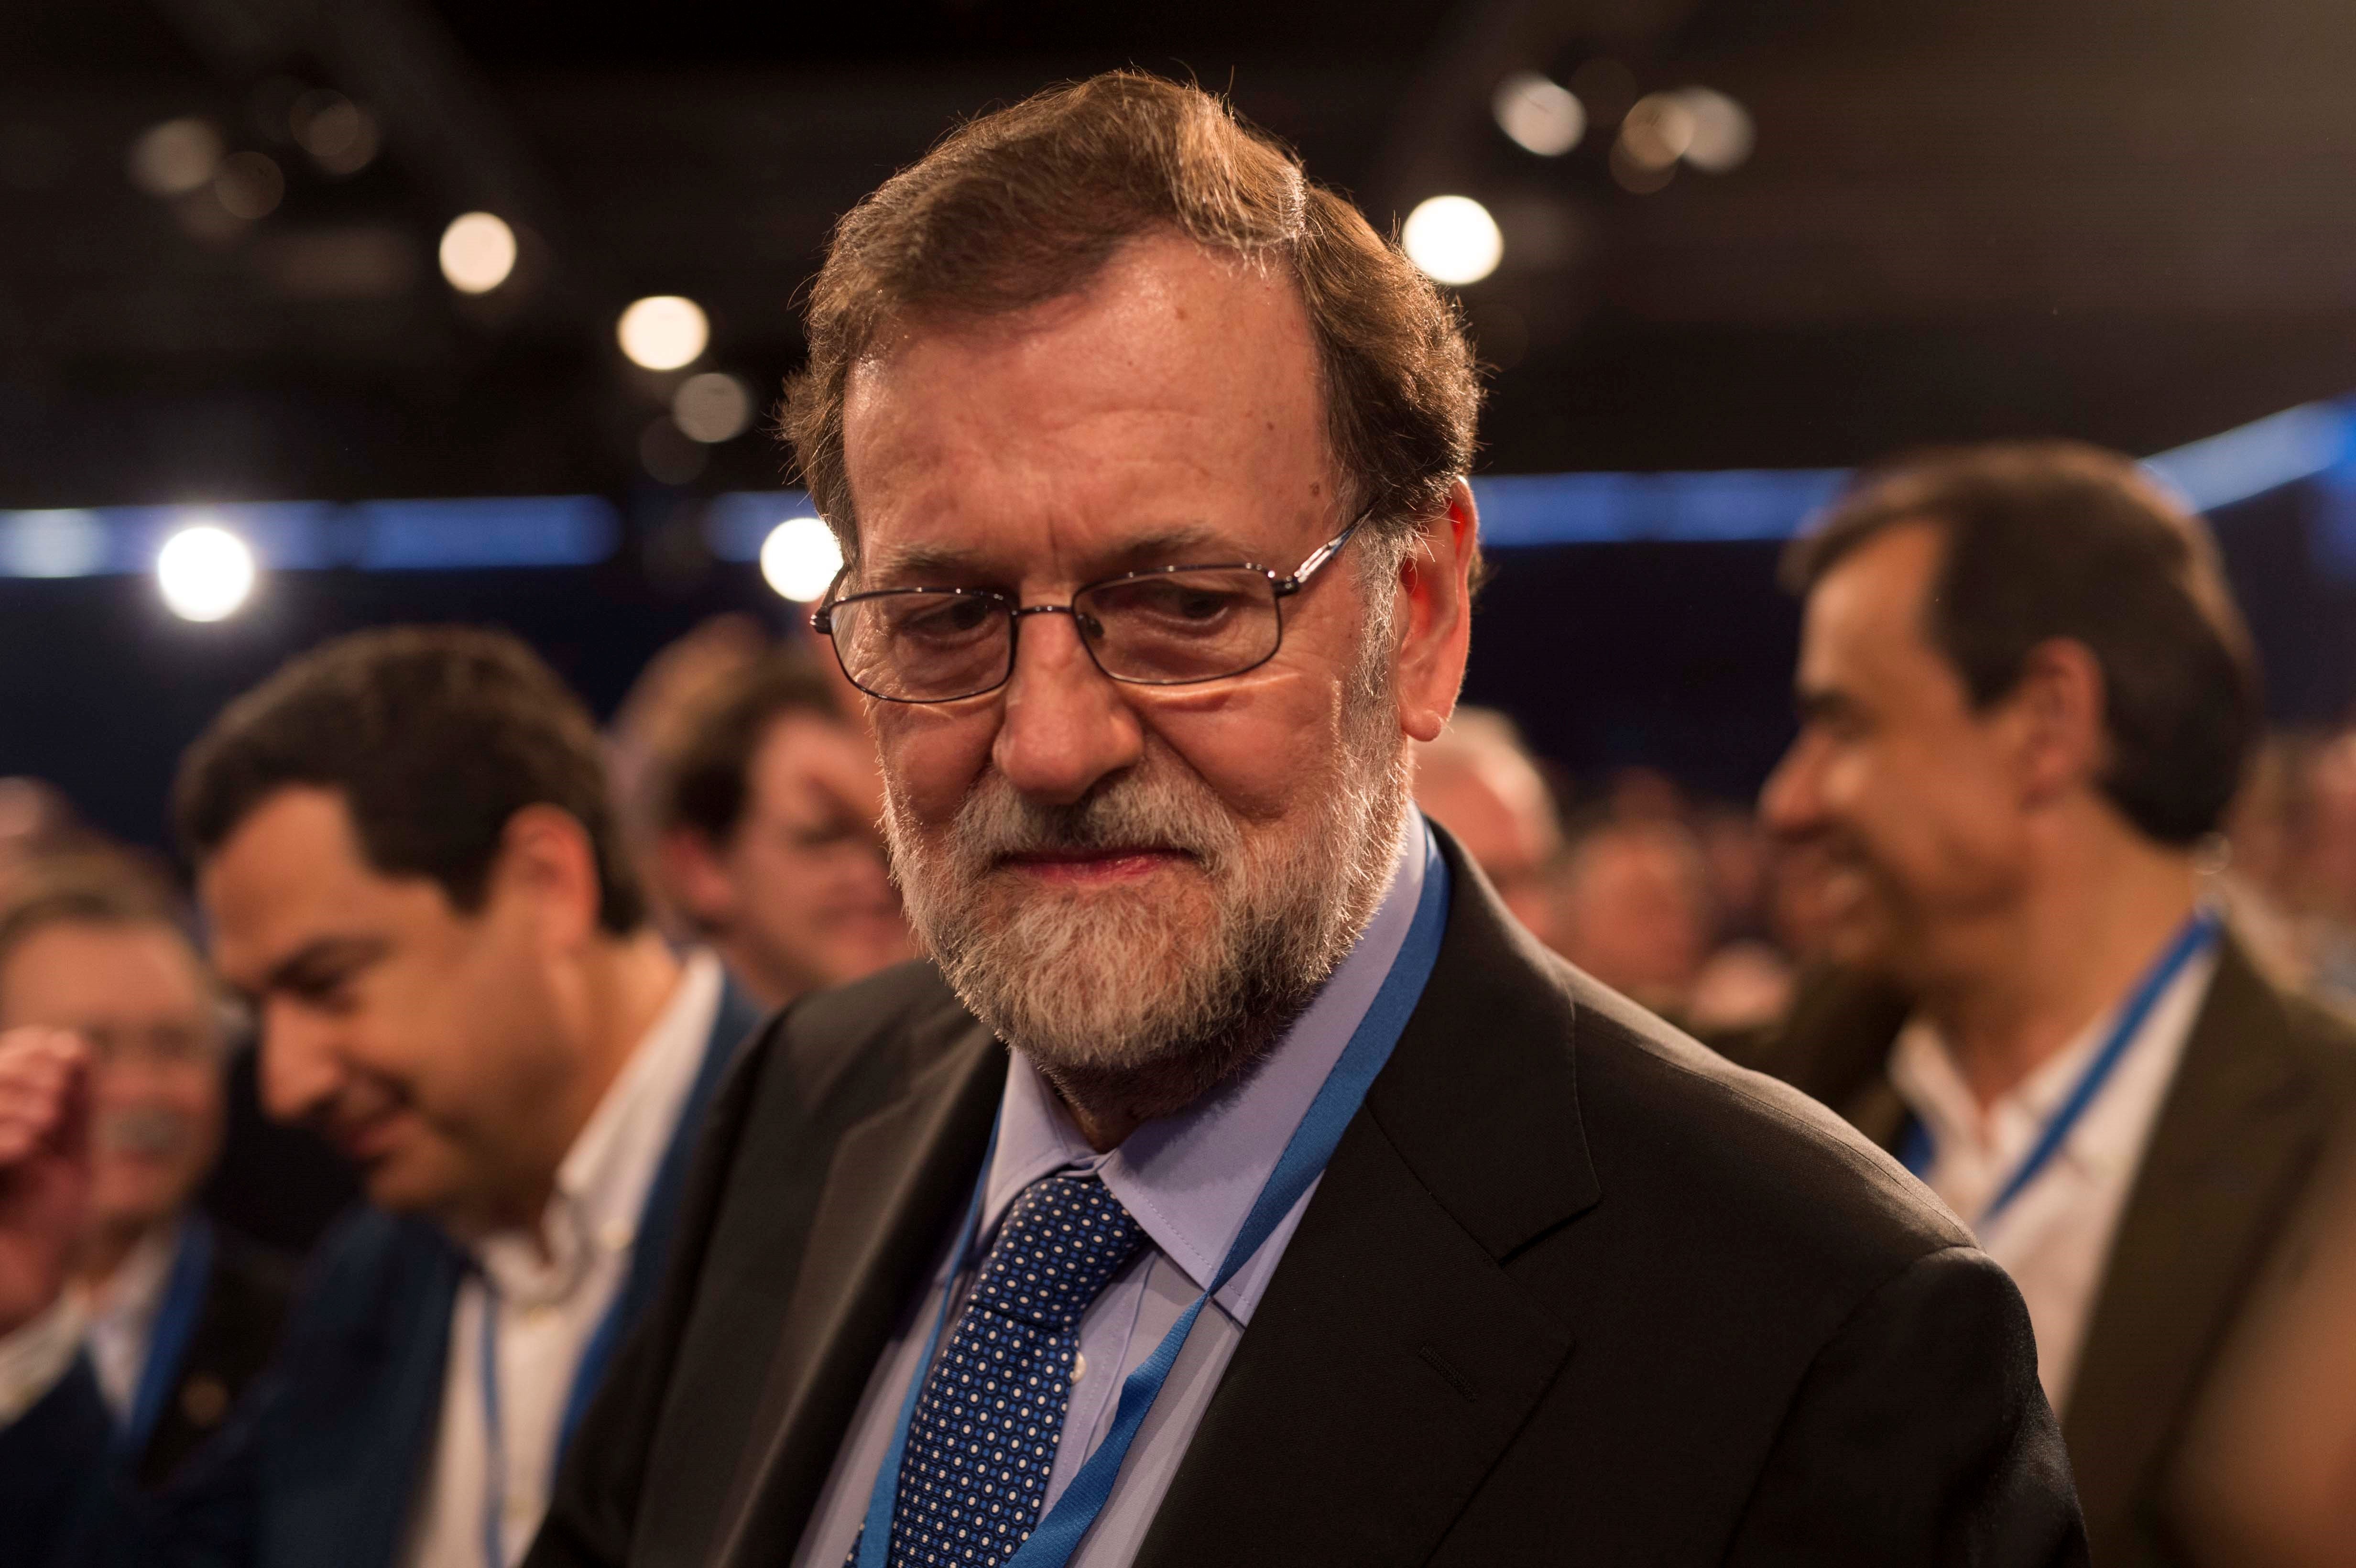 Rajoy evita respondre a la ministra alemanya i no trucarà a Merkel per Puigdemont